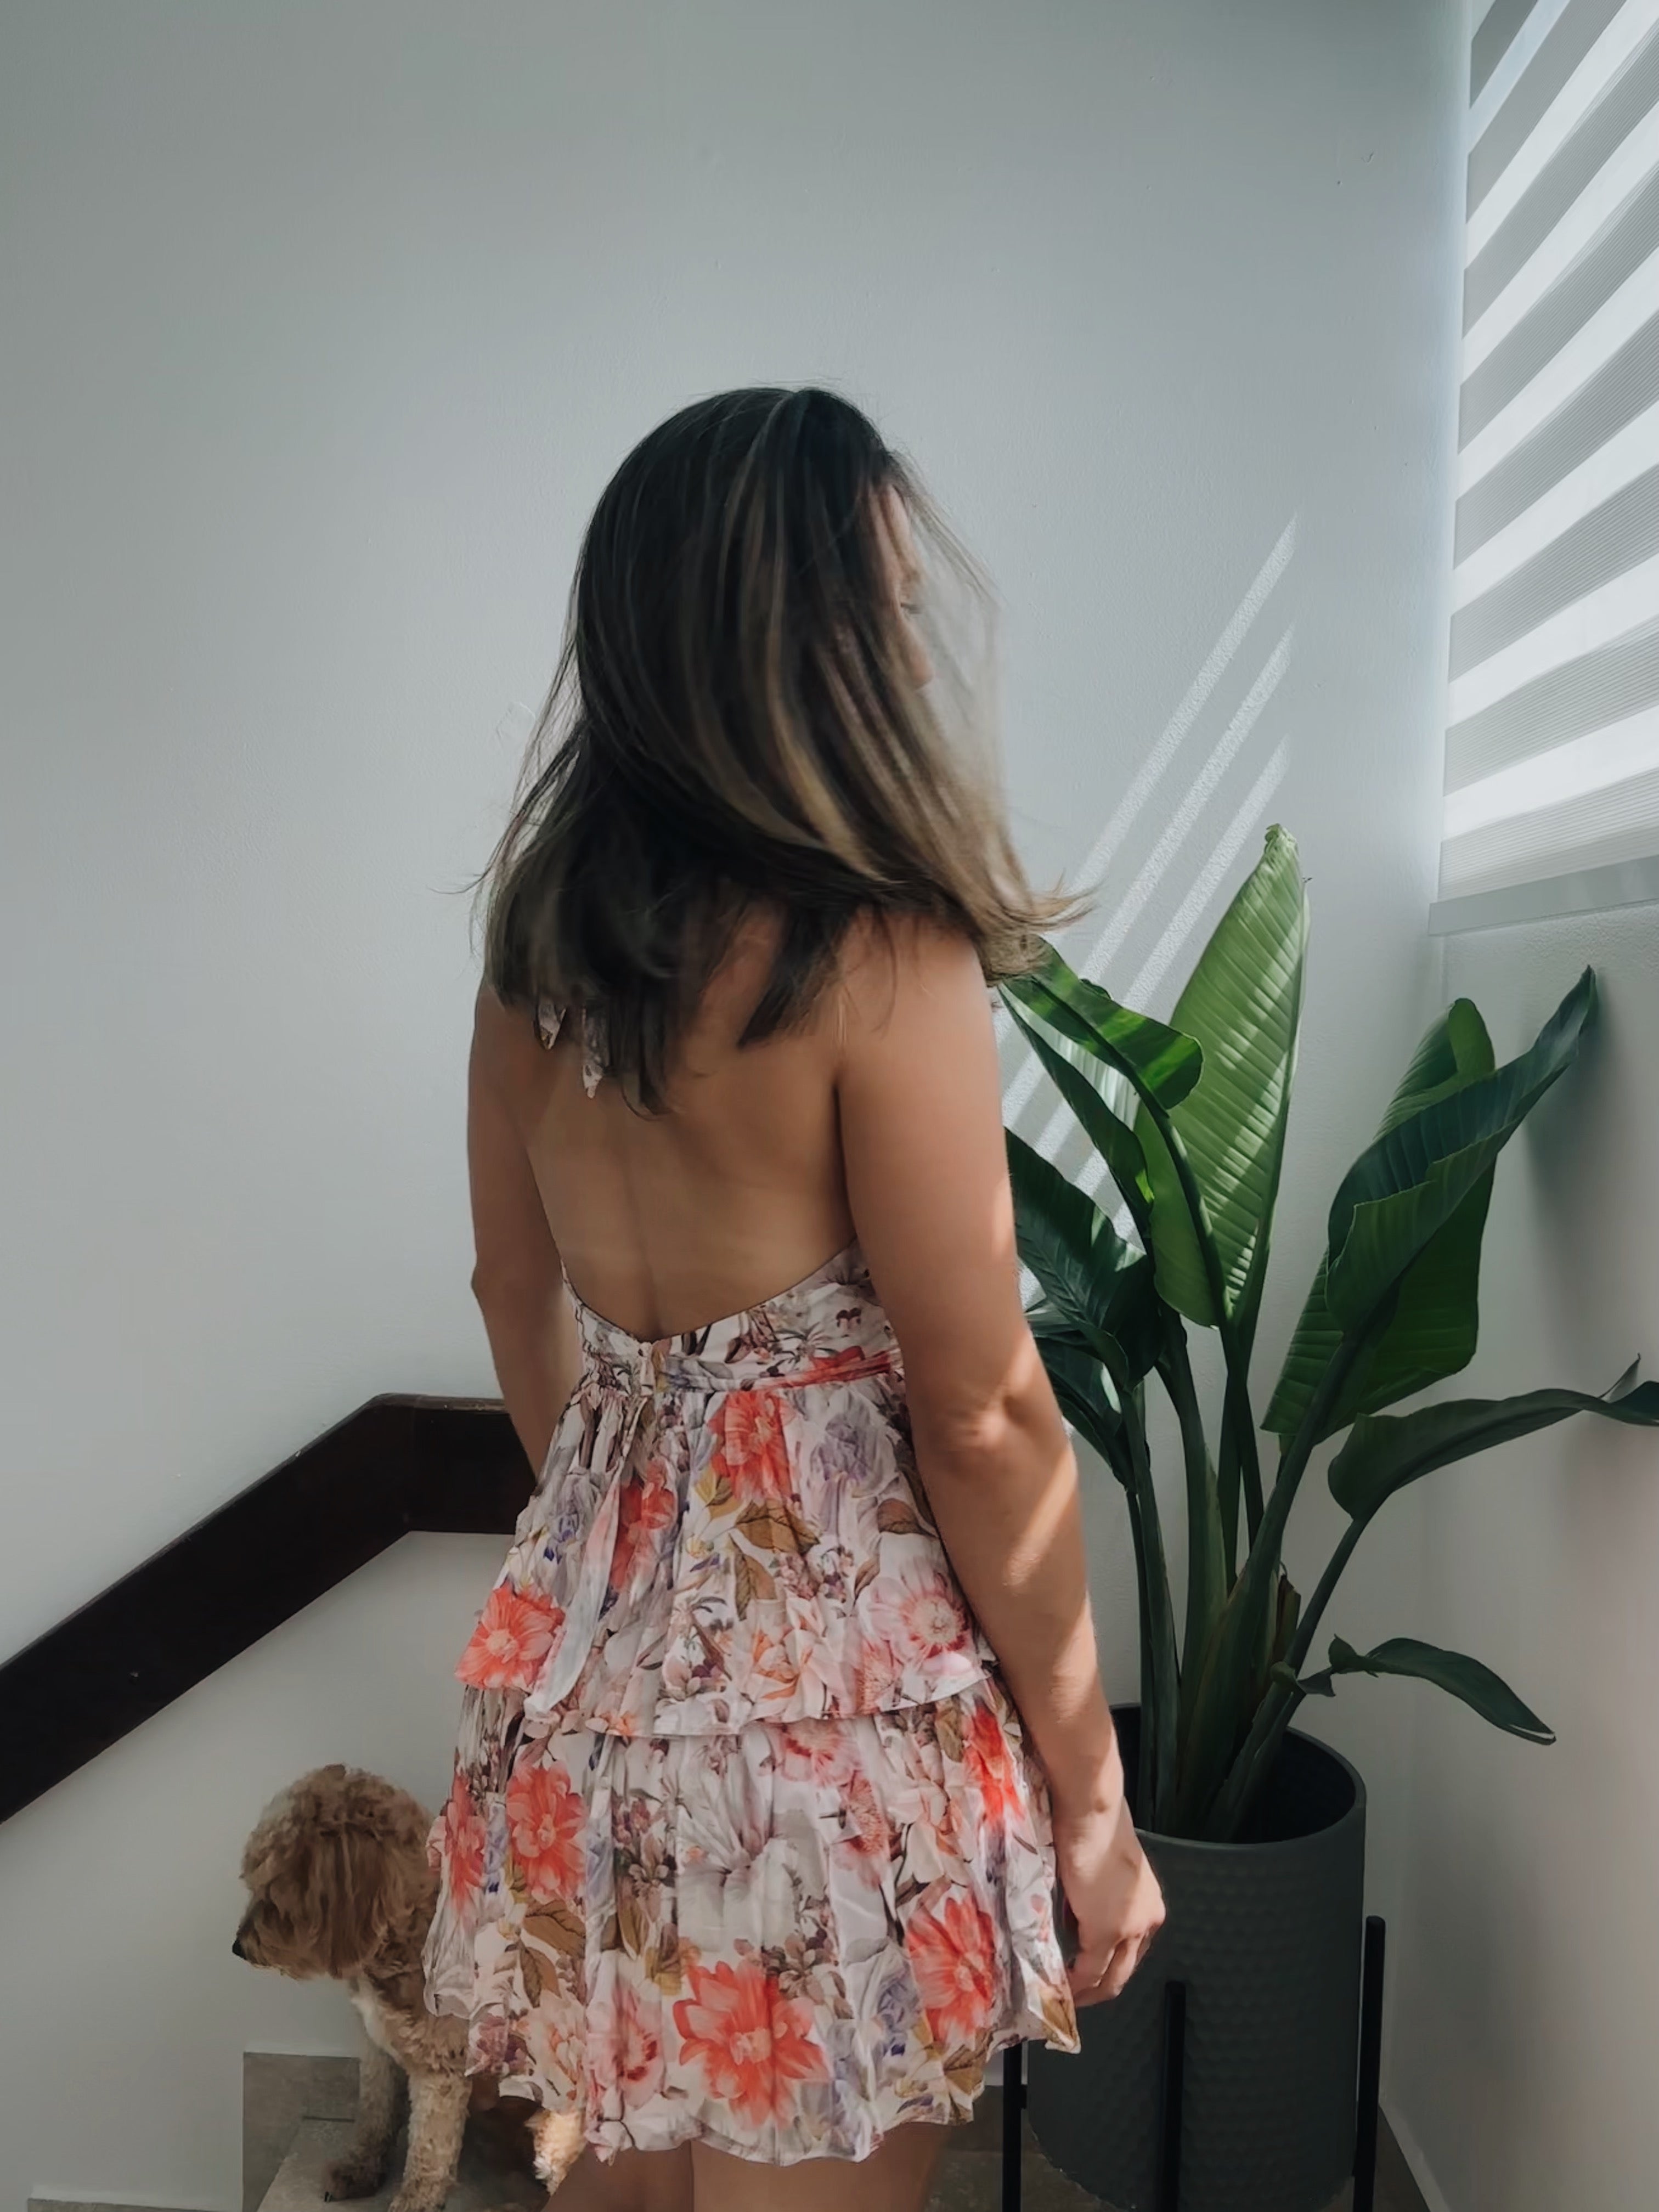 Cartagena Mini Dress